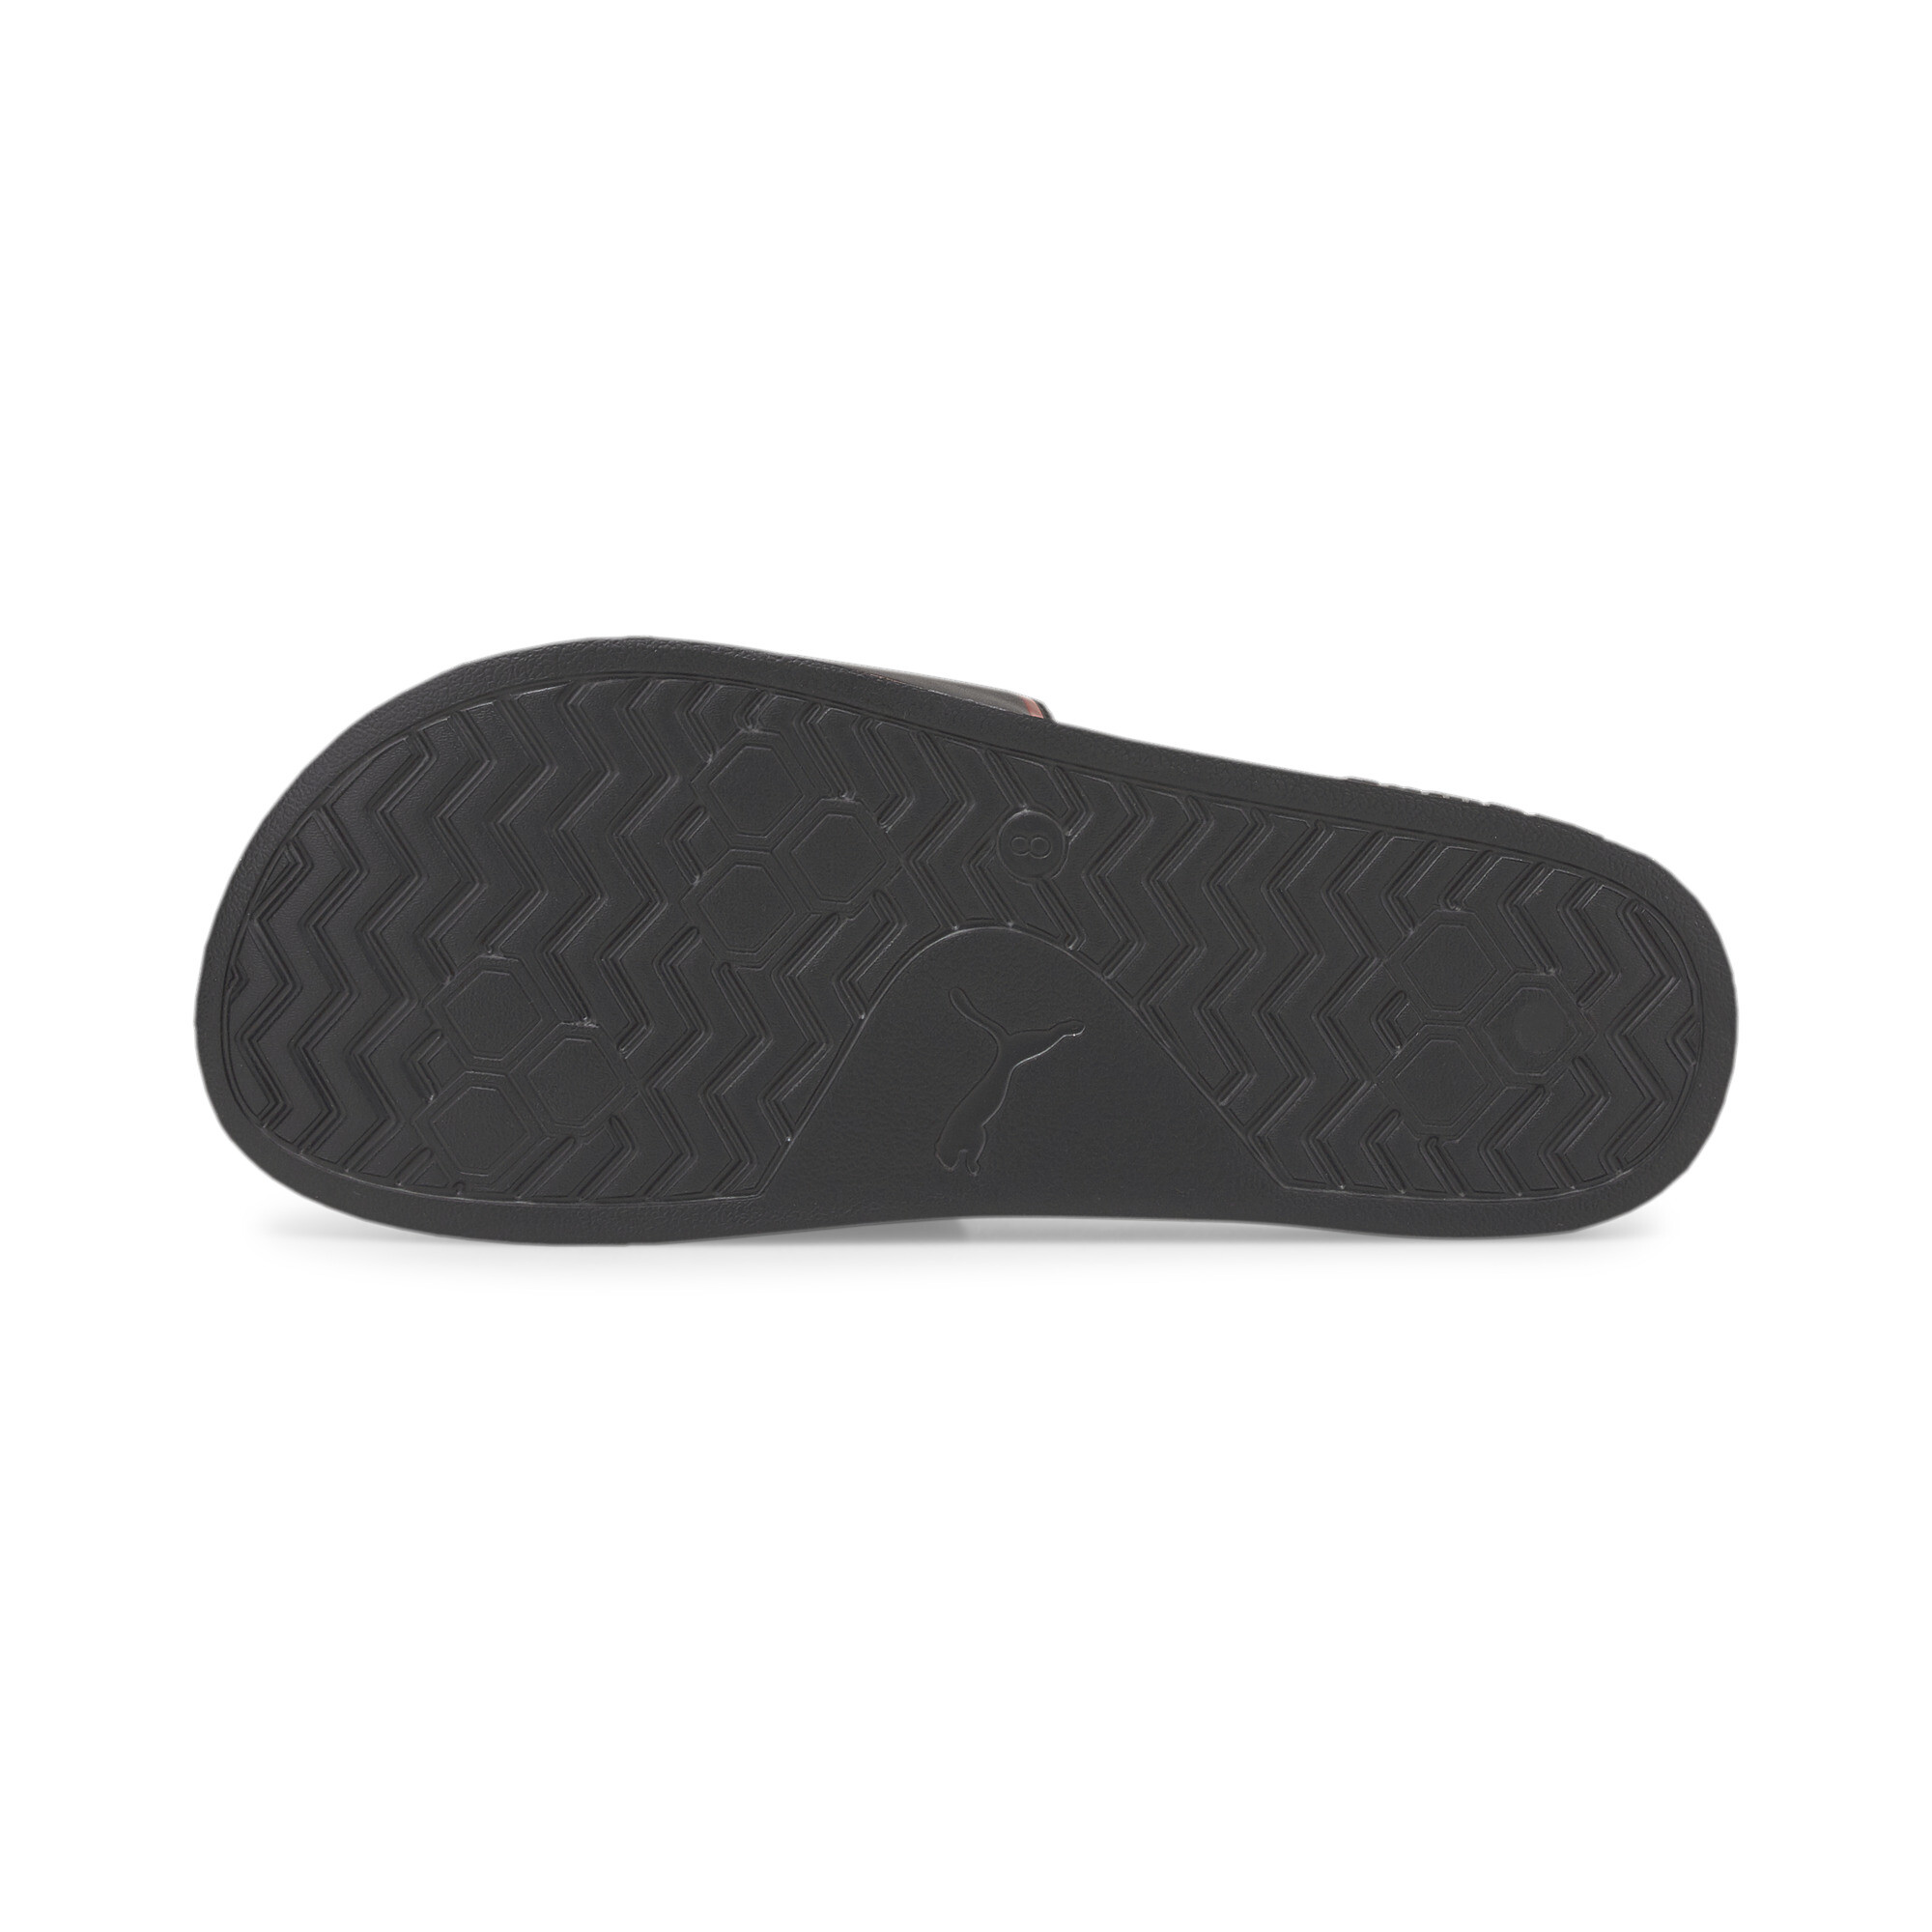 Men's PUMA ACM Leadcat 2.0 Sandals In Black, Size EU 37